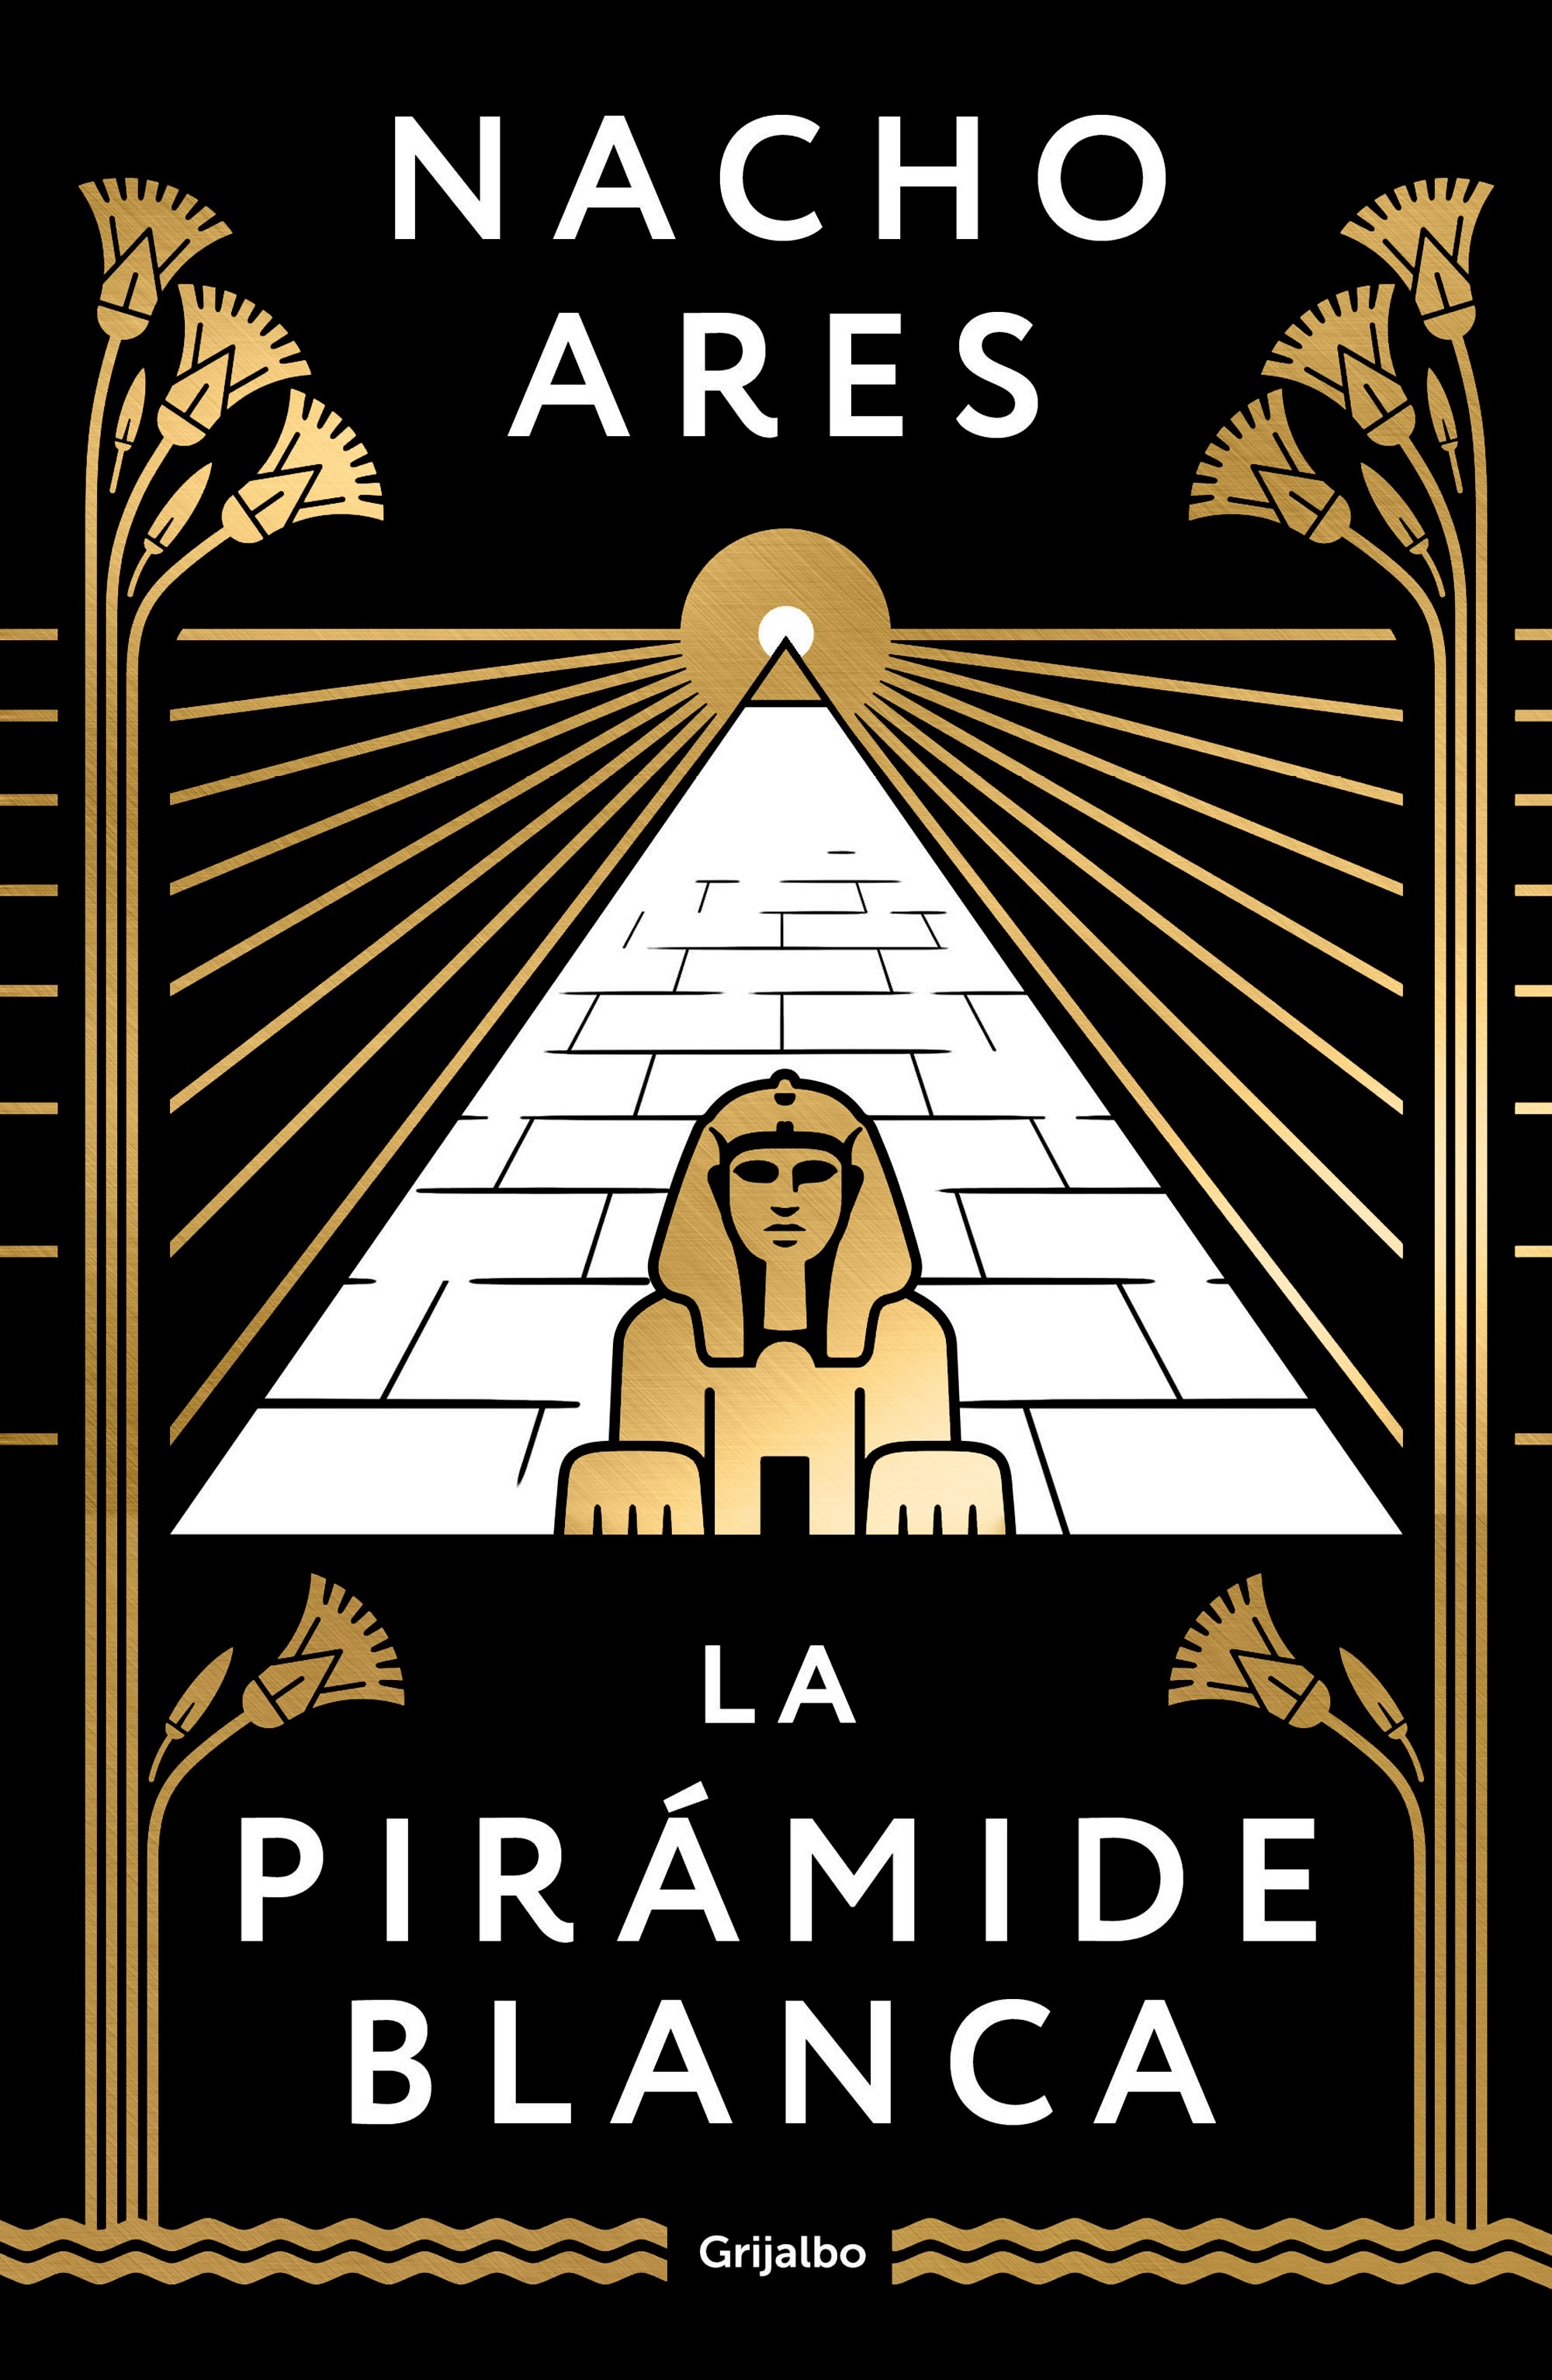 Pirámide blanca, La